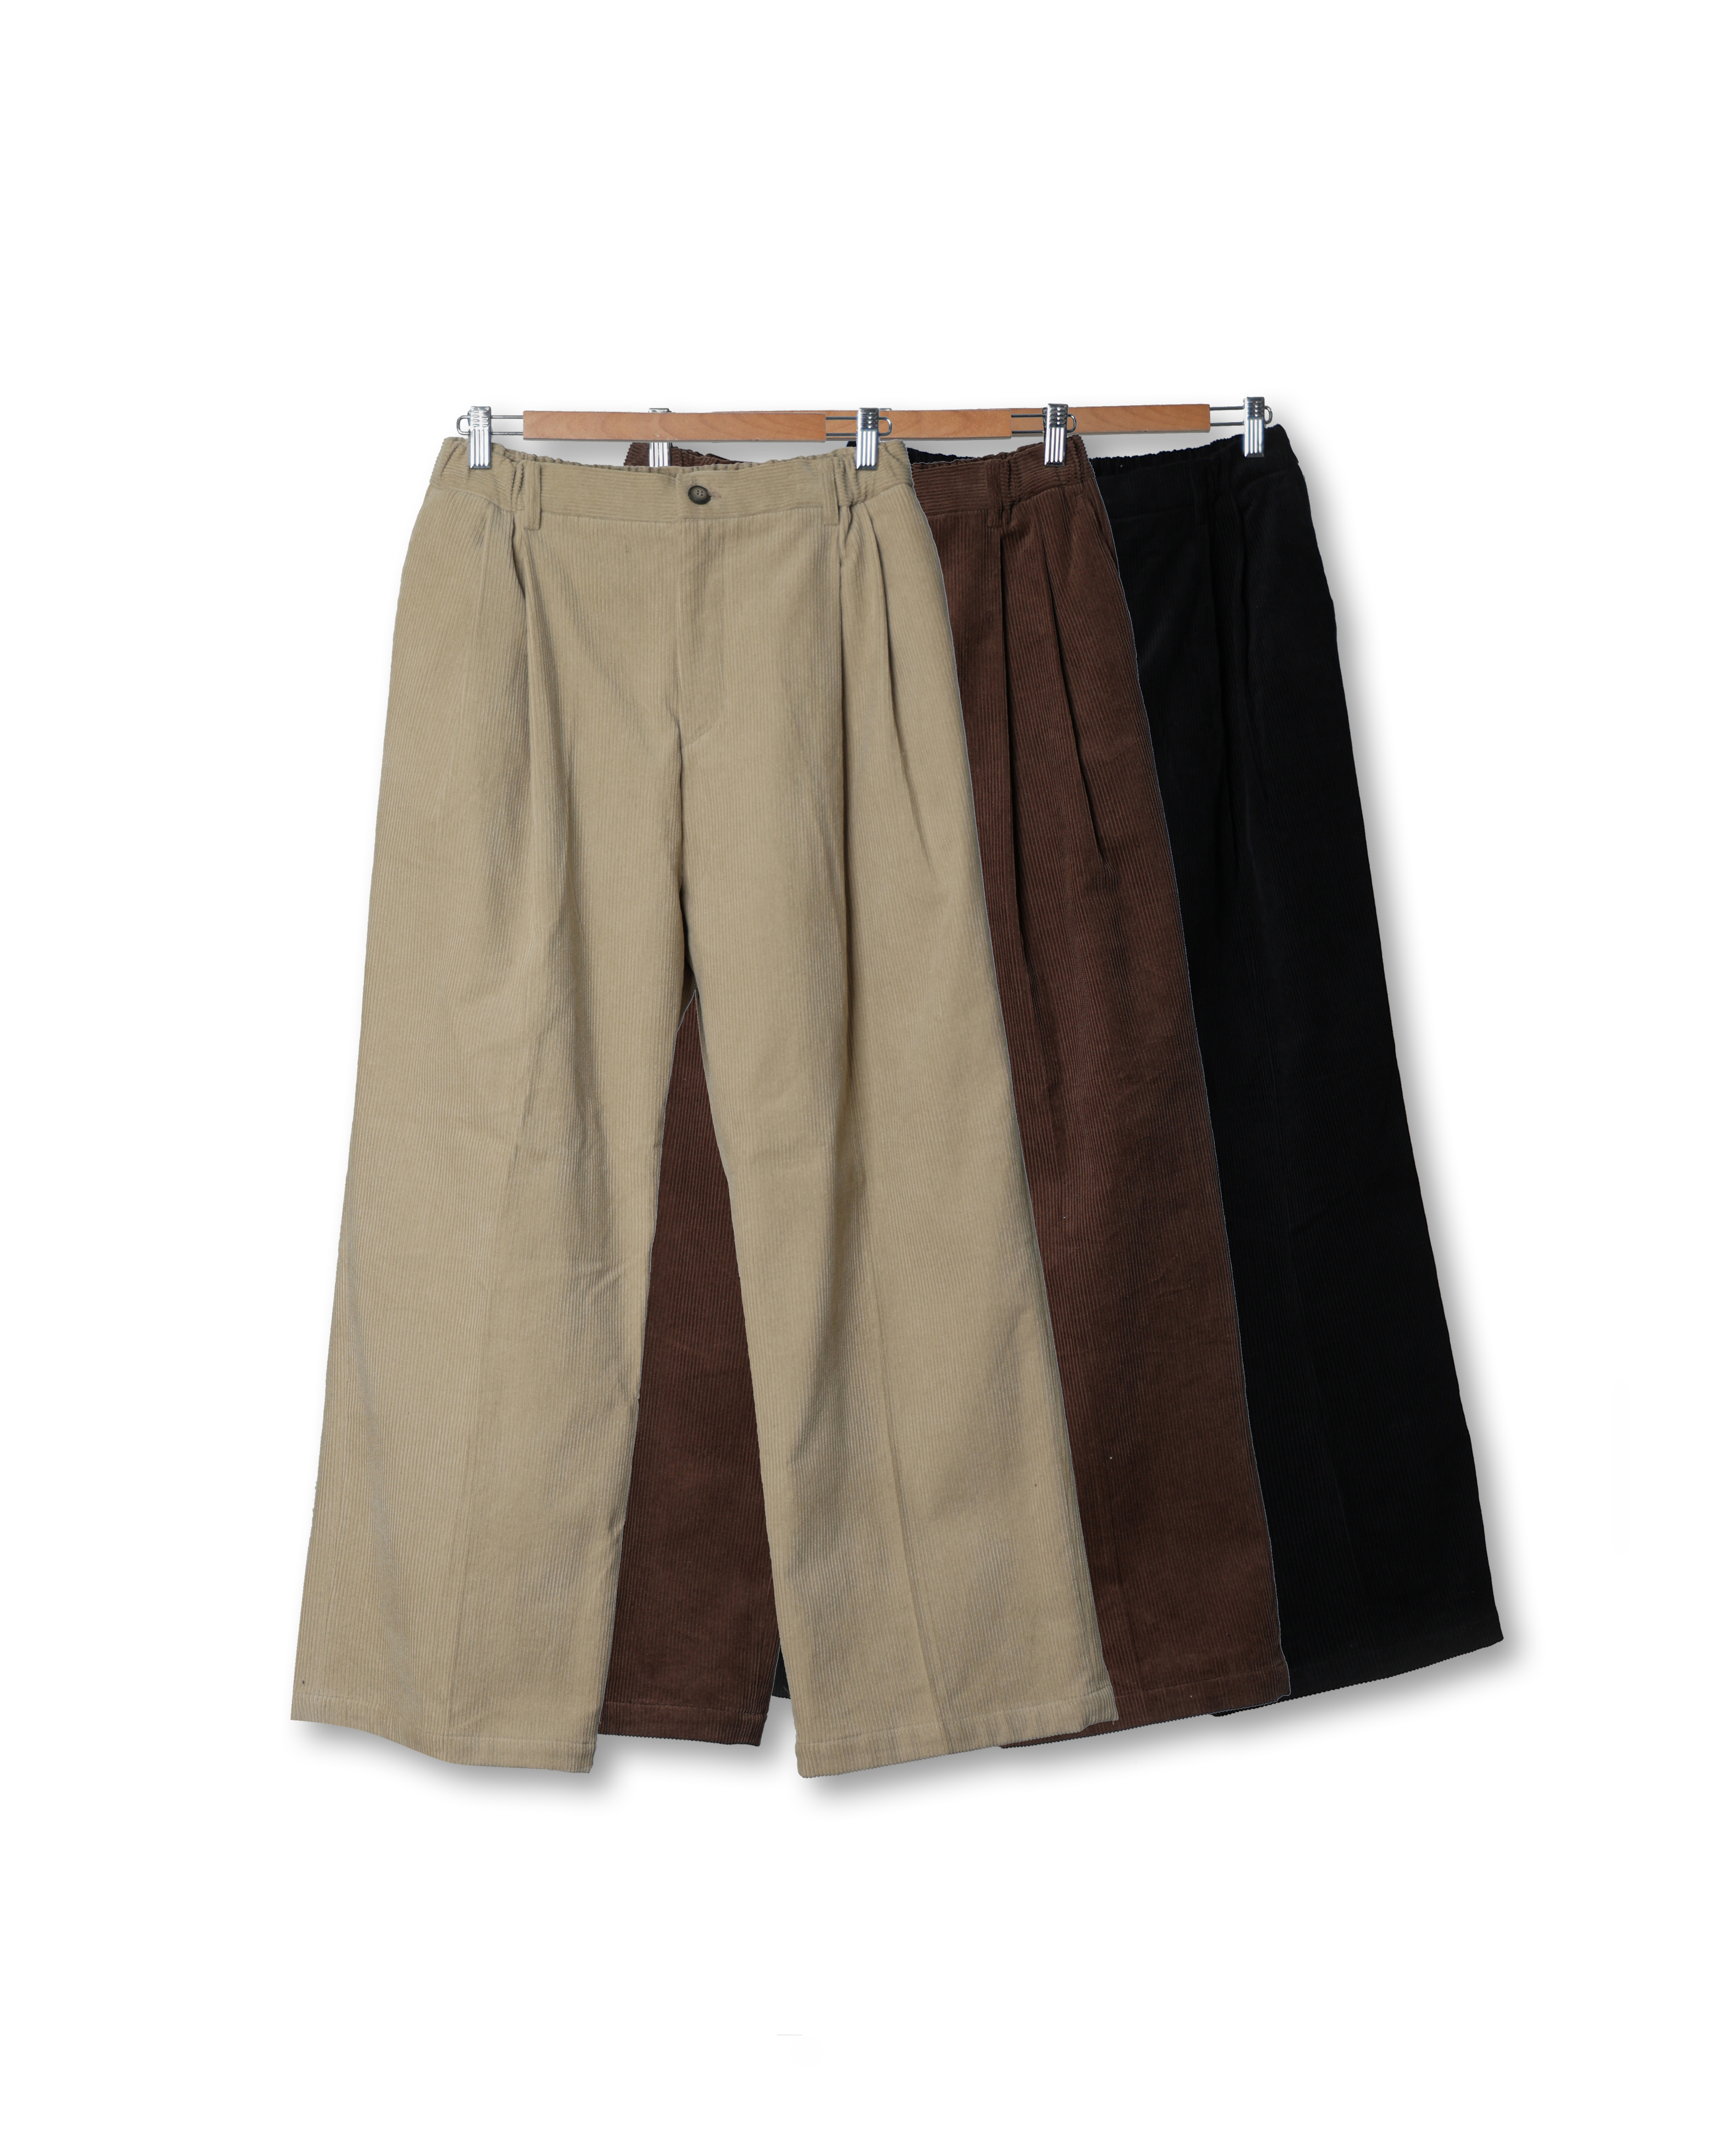 MILLIN Daily City Wide Corduroy Pants (Black/Brown/Beige)